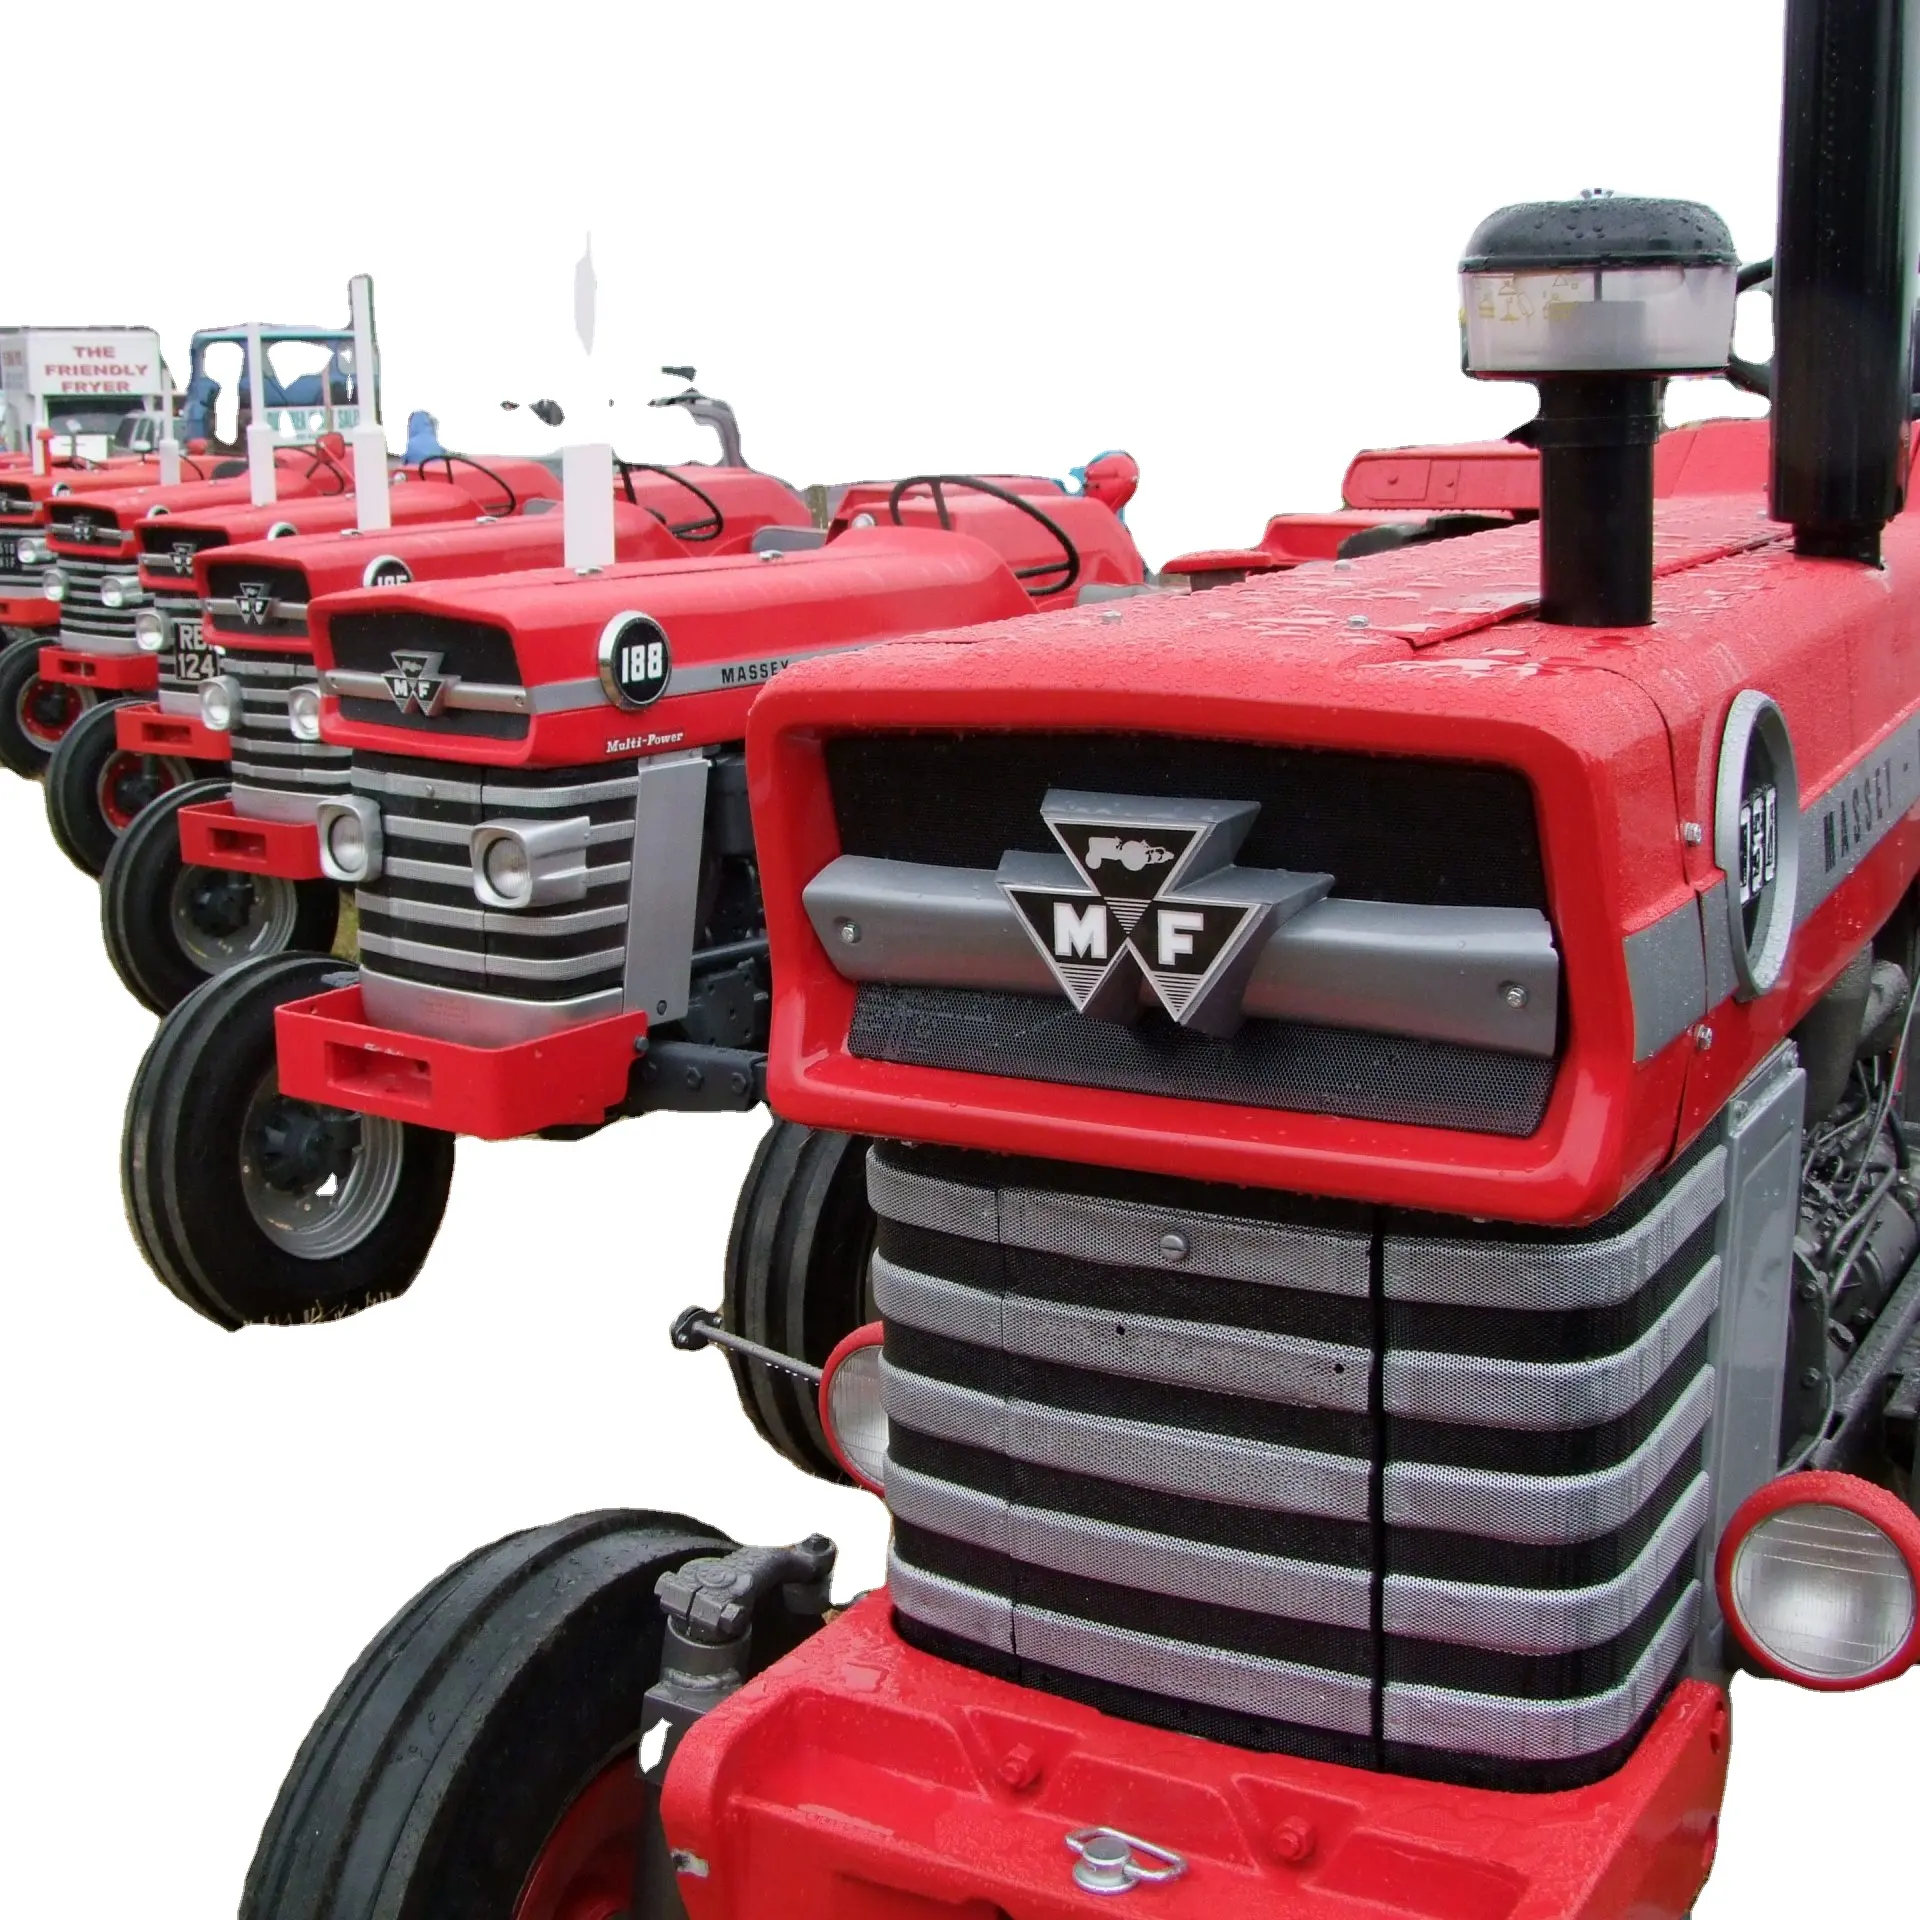 Macchine agricole vendita calda prezzo diretto di fabbrica 540HP trattore agricolo a quattro ruote Massey ferguson/trattori massey